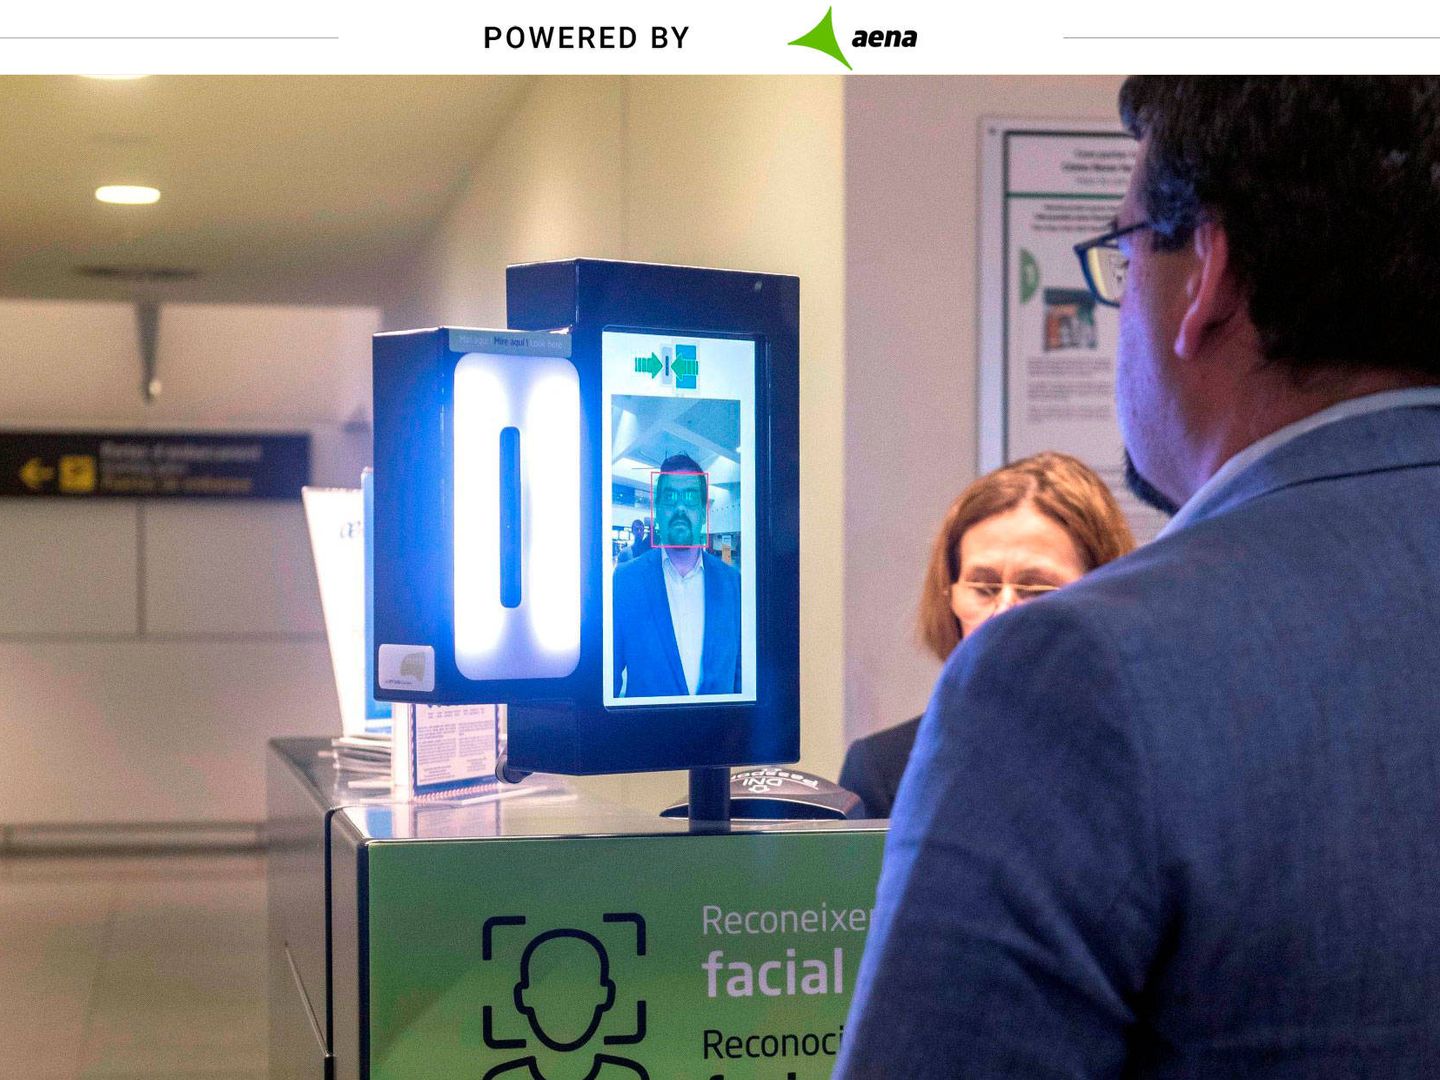 NEC implementará sistema de reconocimiento facial en aeropuertos